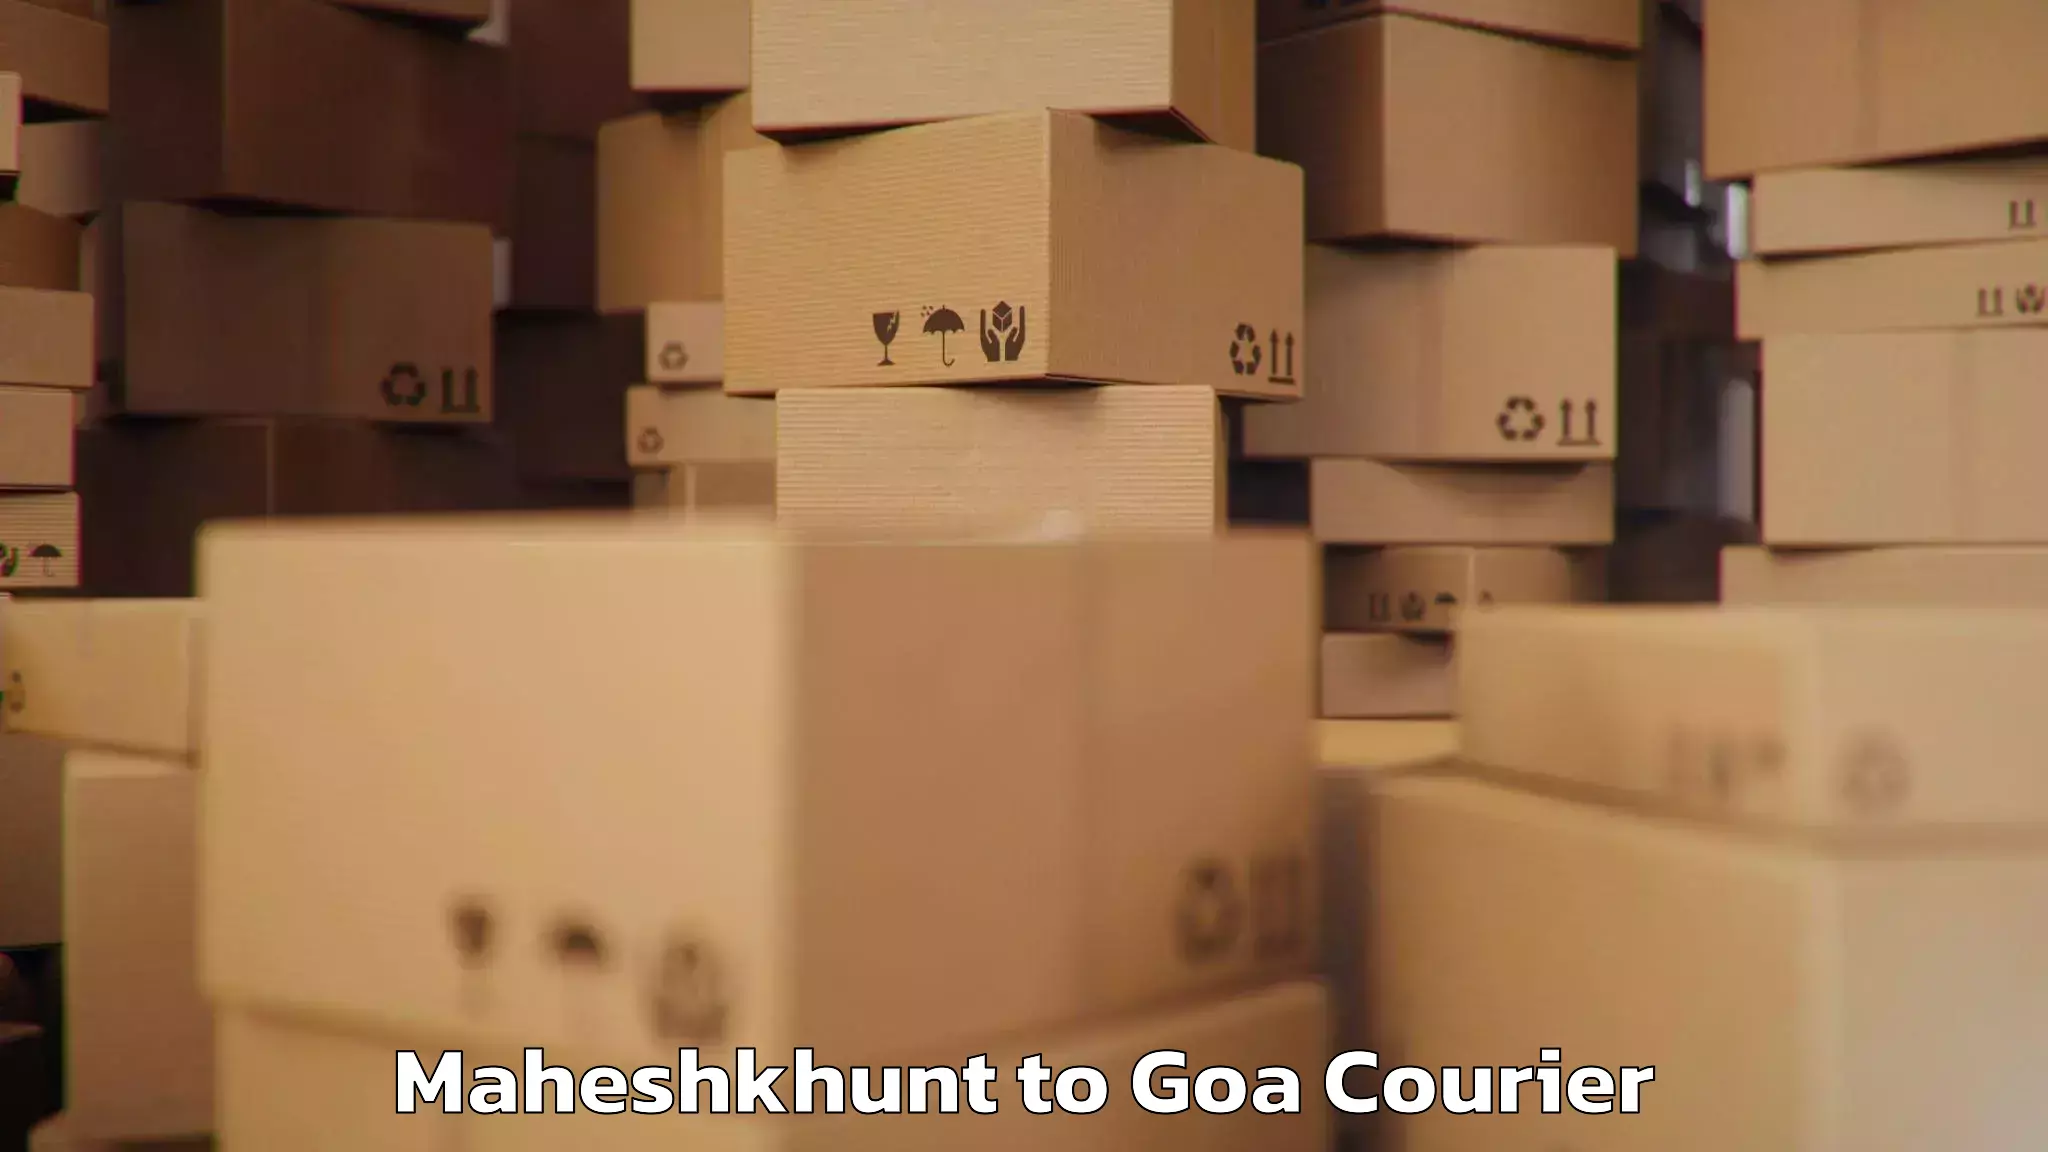 Electronic items luggage shipping Maheshkhunt to Goa